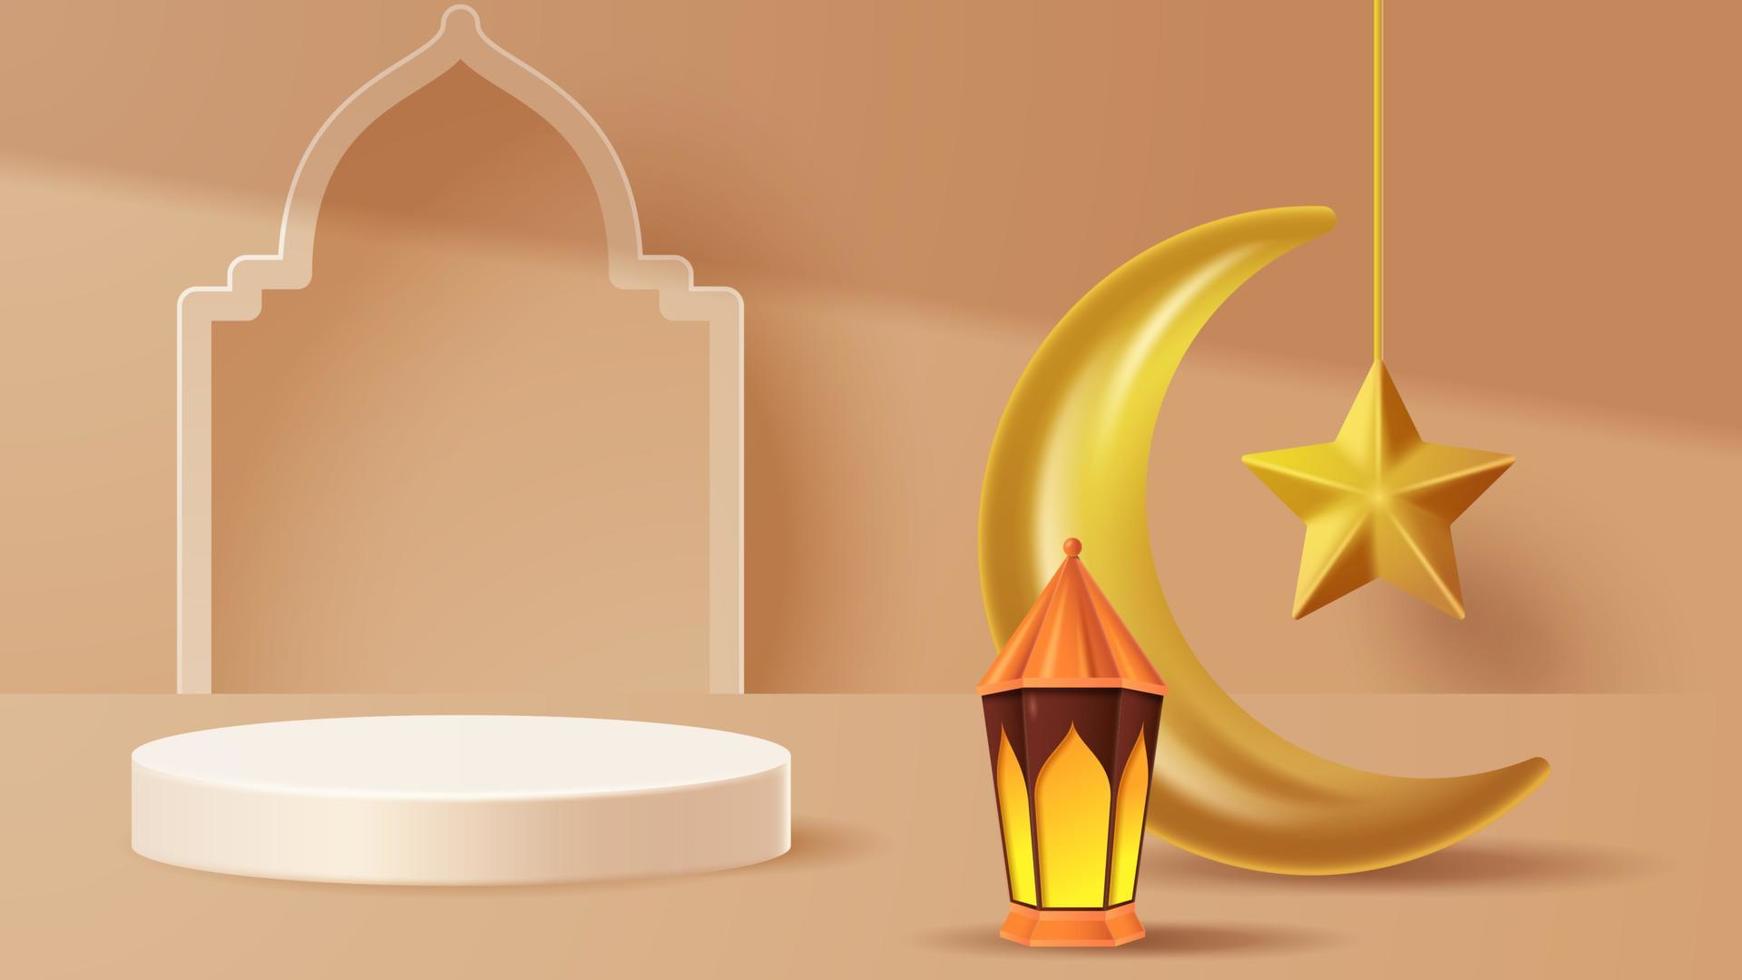 fond de décoration de podium d'affichage islamique avec ornement islamique. vecteur 3d illustration